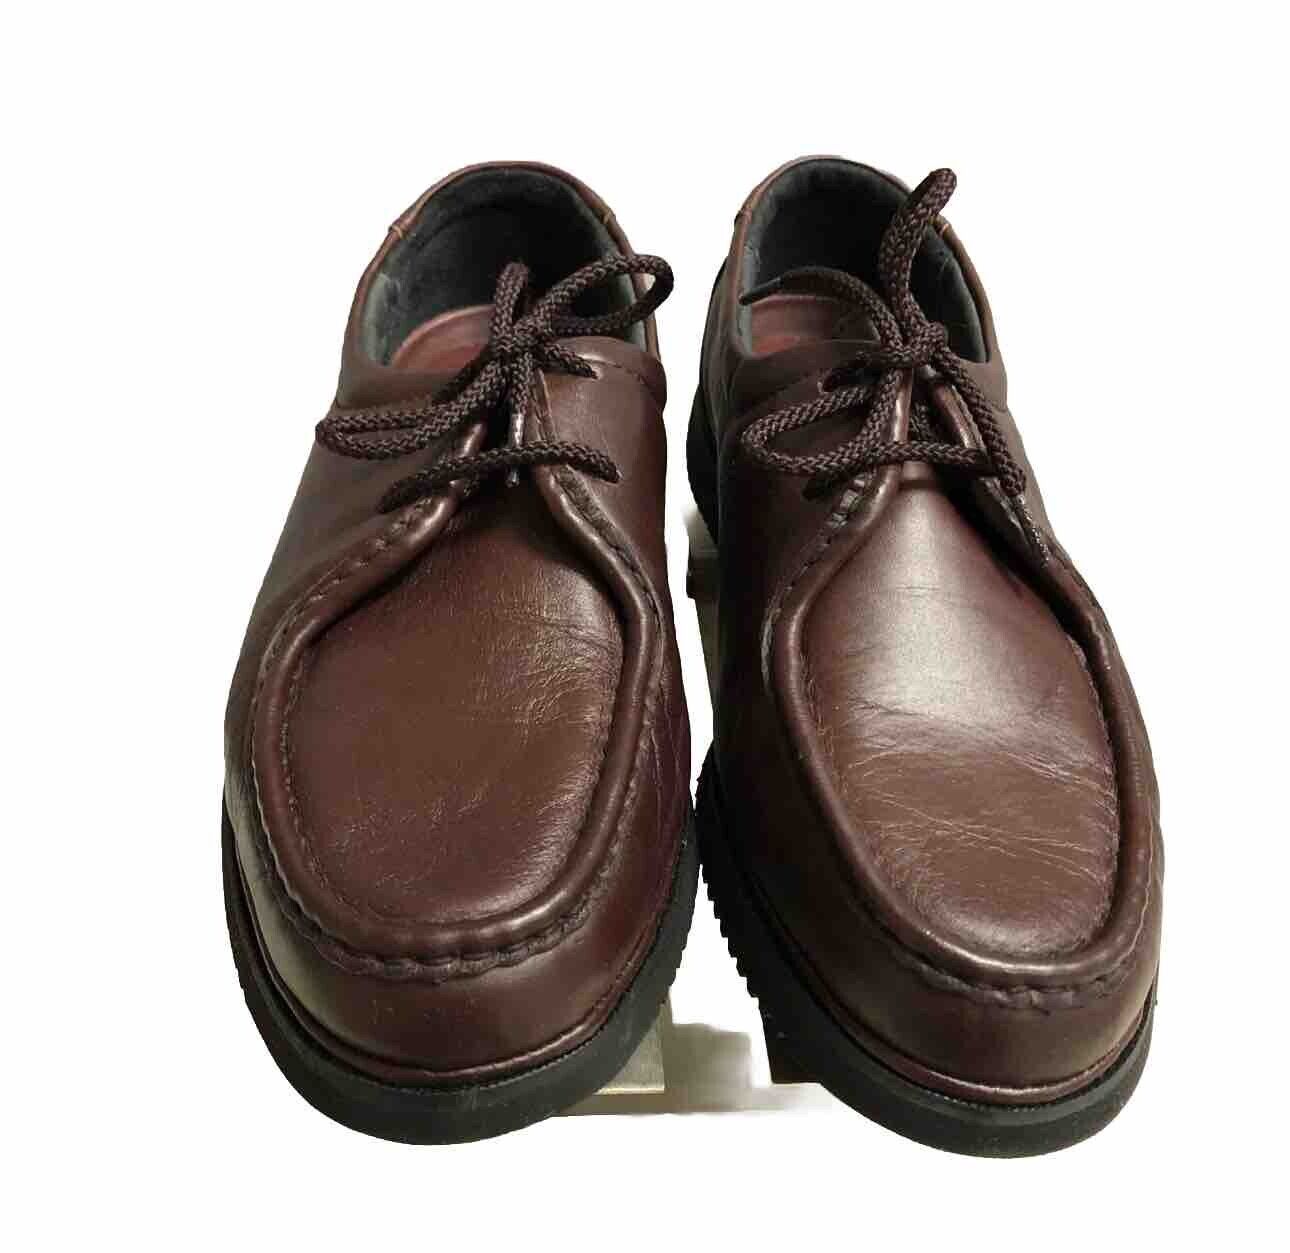 Florsheim Men’s Leather Lace-Up Burgundy Shoes Sz 9.5 NWOT